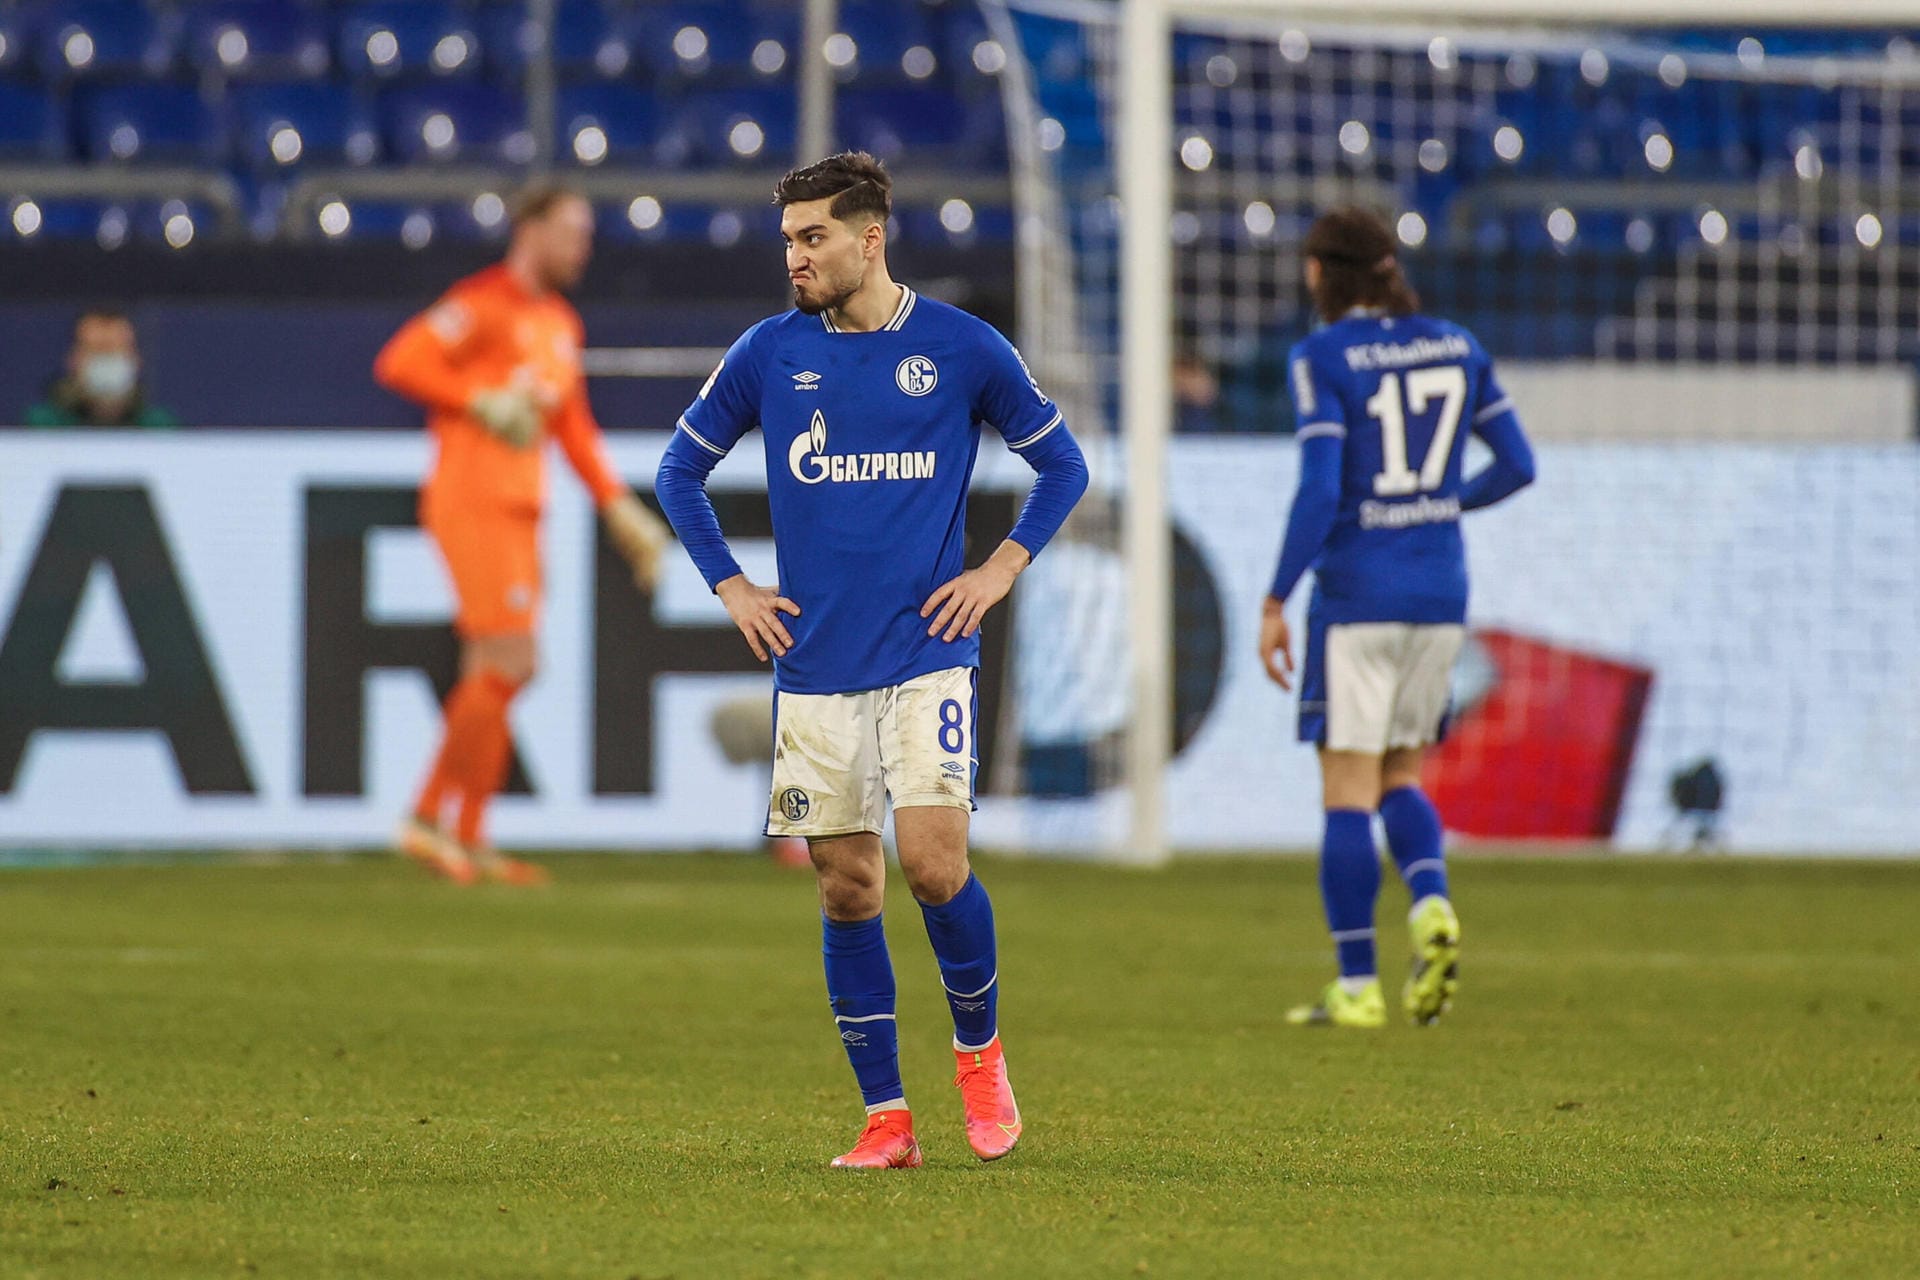 Desaströses Revierderby gegen Borussia Dortmund: Der FC Schalke 04 taumelt immer weiter dem Abstieg entgegen. Gegen den BVB erwischten nur ganz wenige Königsblaue Normalform. Die Einzelkritik.